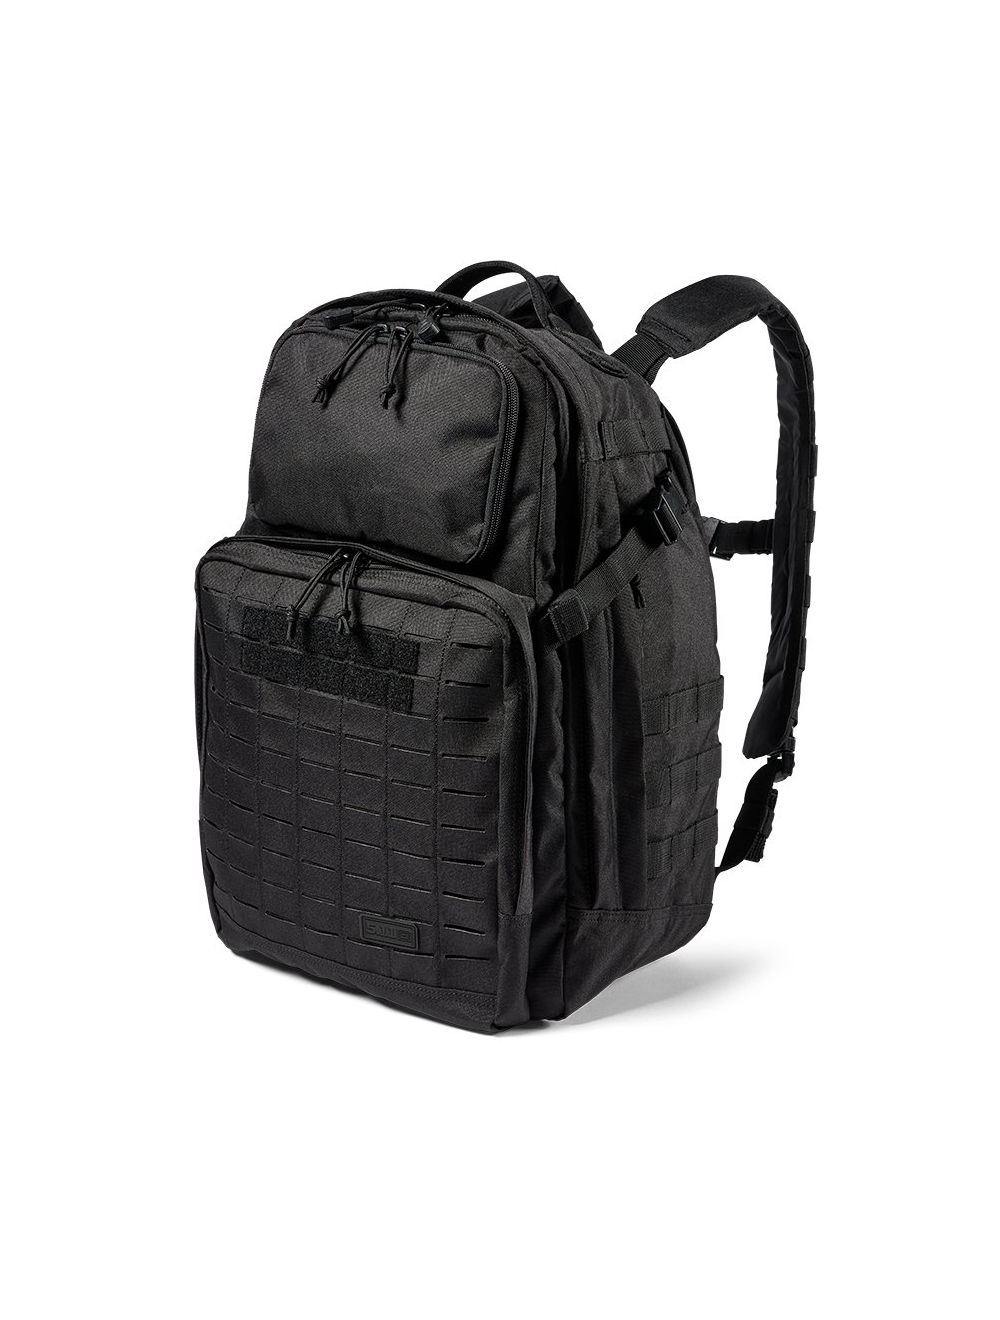 FAST-TAC 24 Backpack